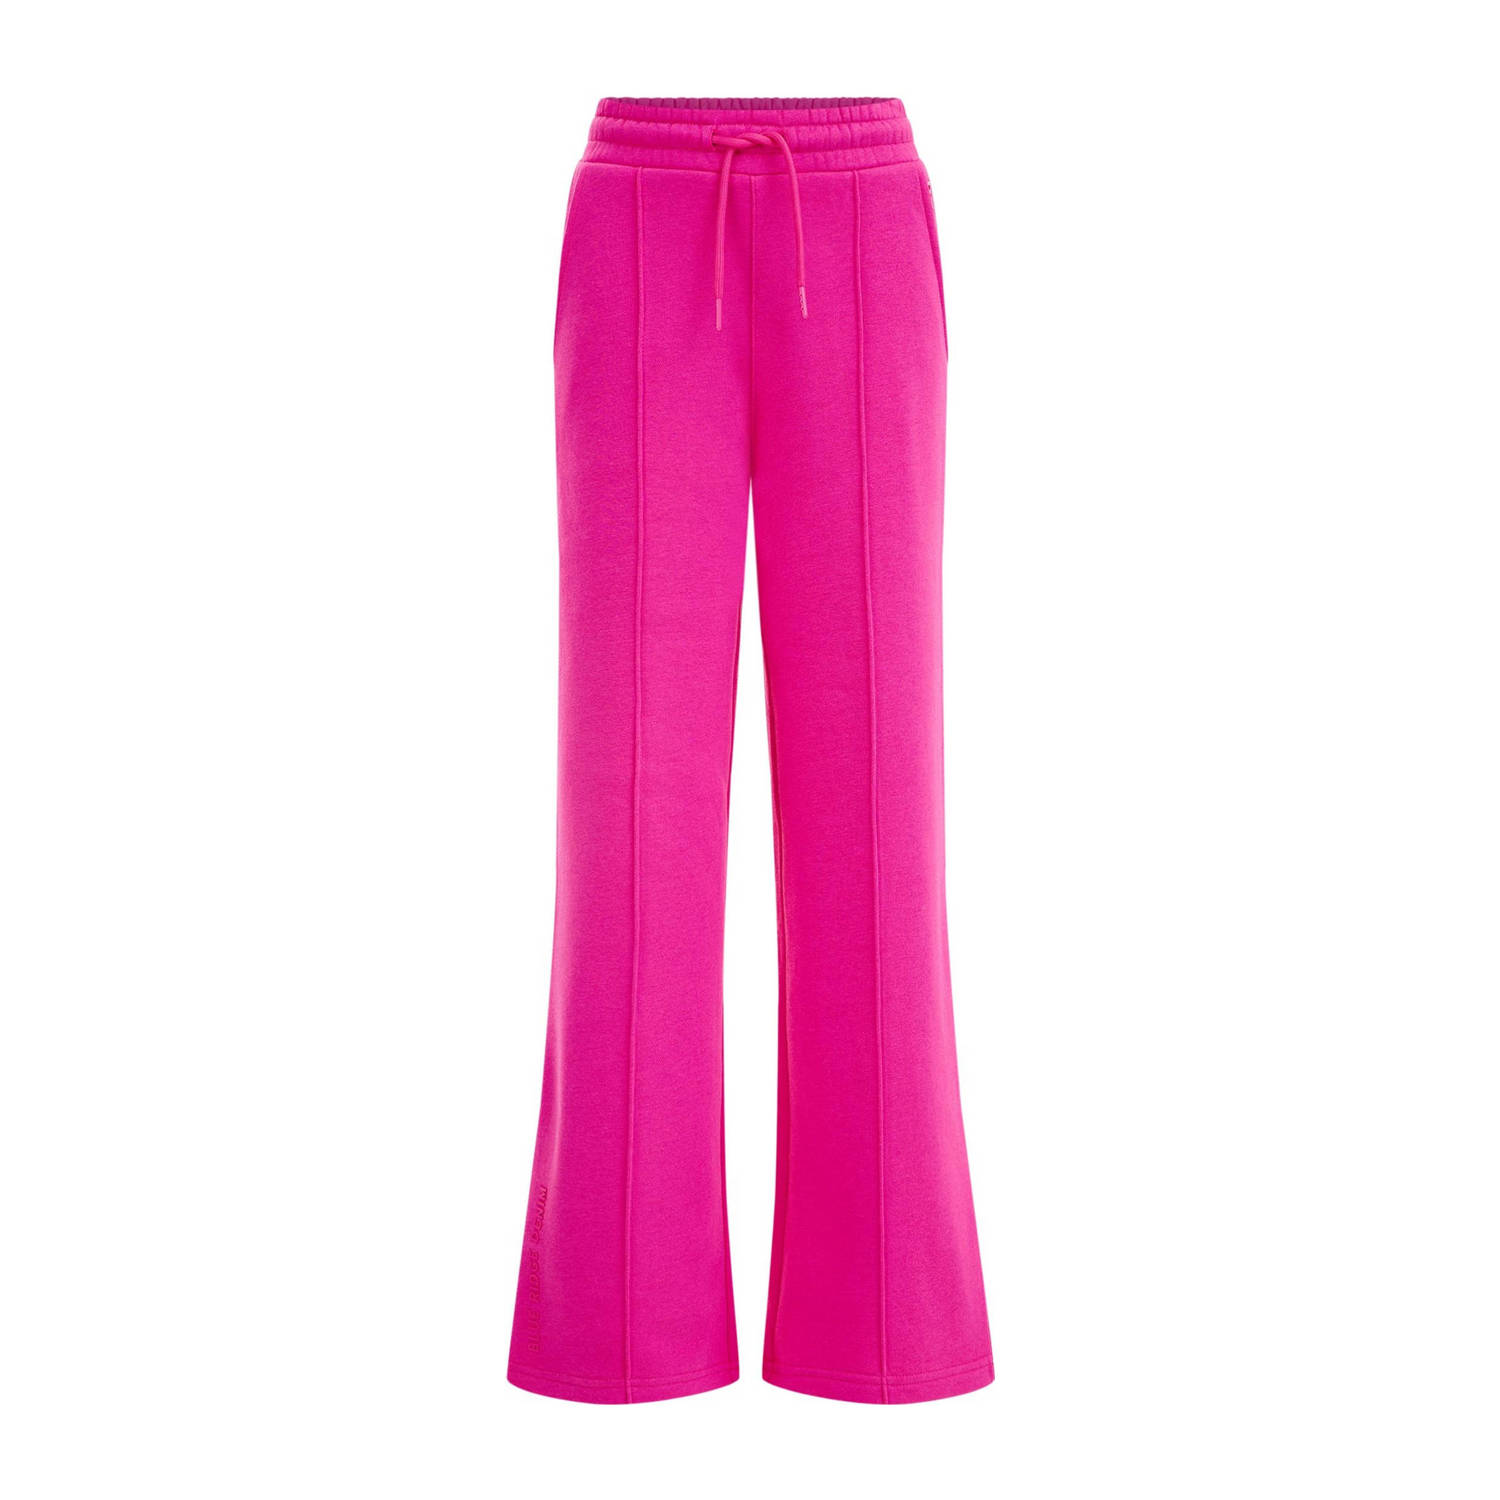 WE Fashion Blue Ridge straight fit broek roze Meisjes Sweat Effen 122